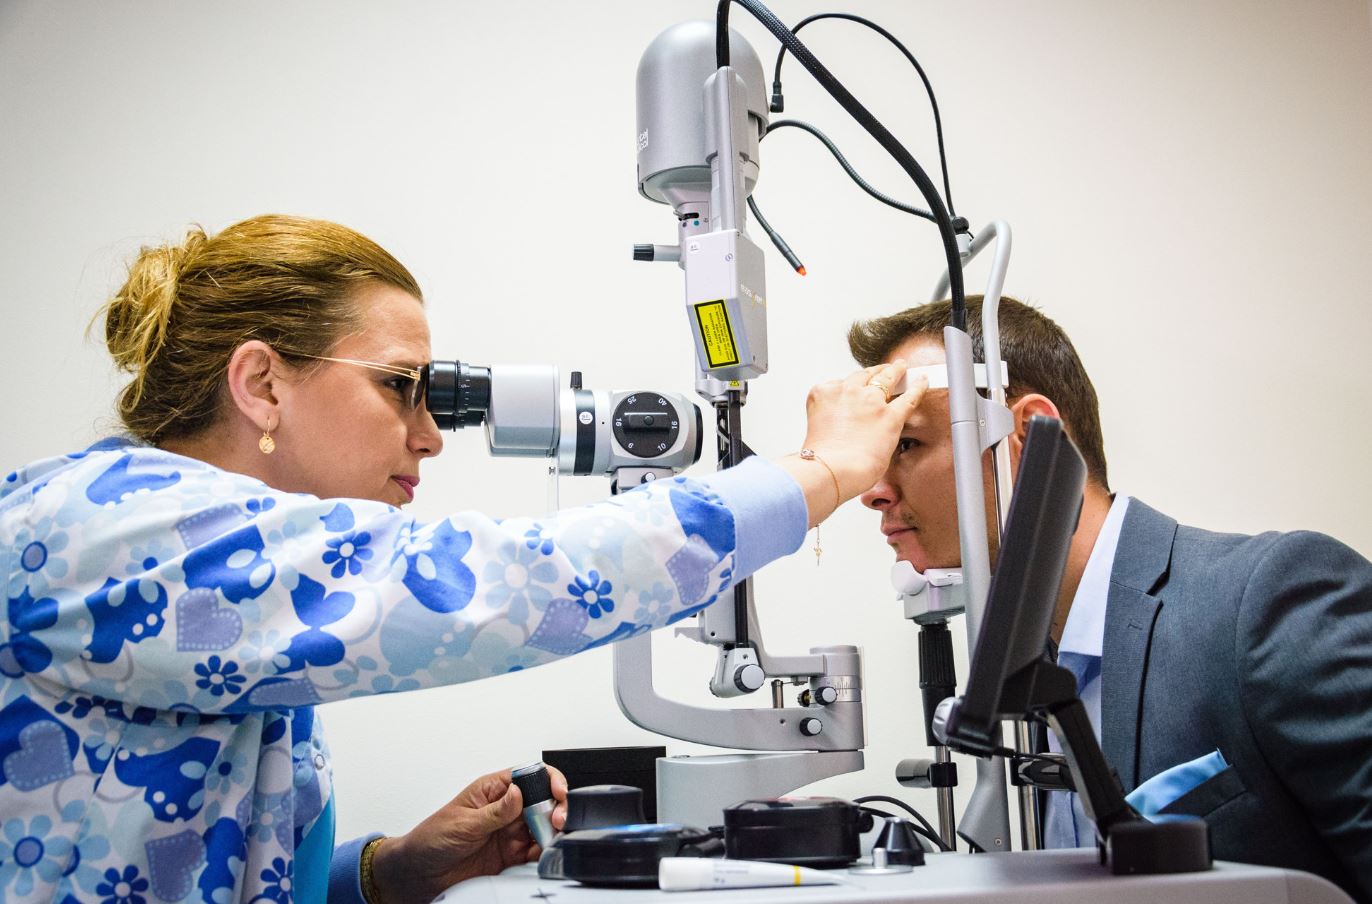 Модерен очен лазер за лечение на заболявания на ретината работи вече в Медицинския университет във Варна. Той е от най-ново поколение. машини от такъв клас има само в още две болници в страната. Следвай ме - Здраве